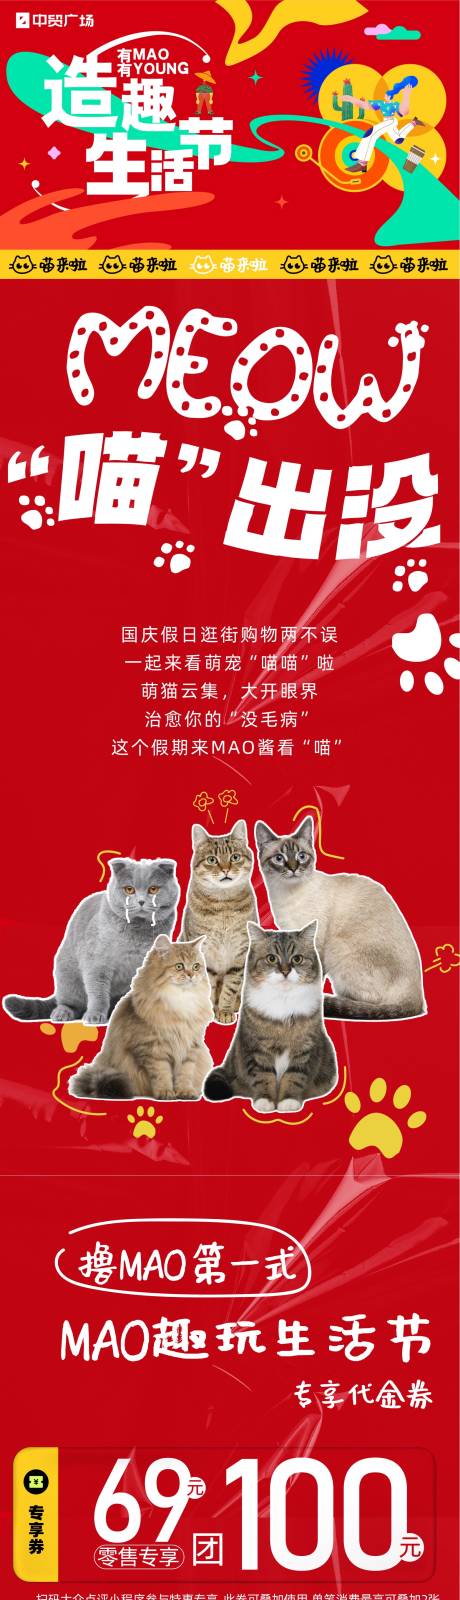 造趣生活节国庆来撸猫长图海报